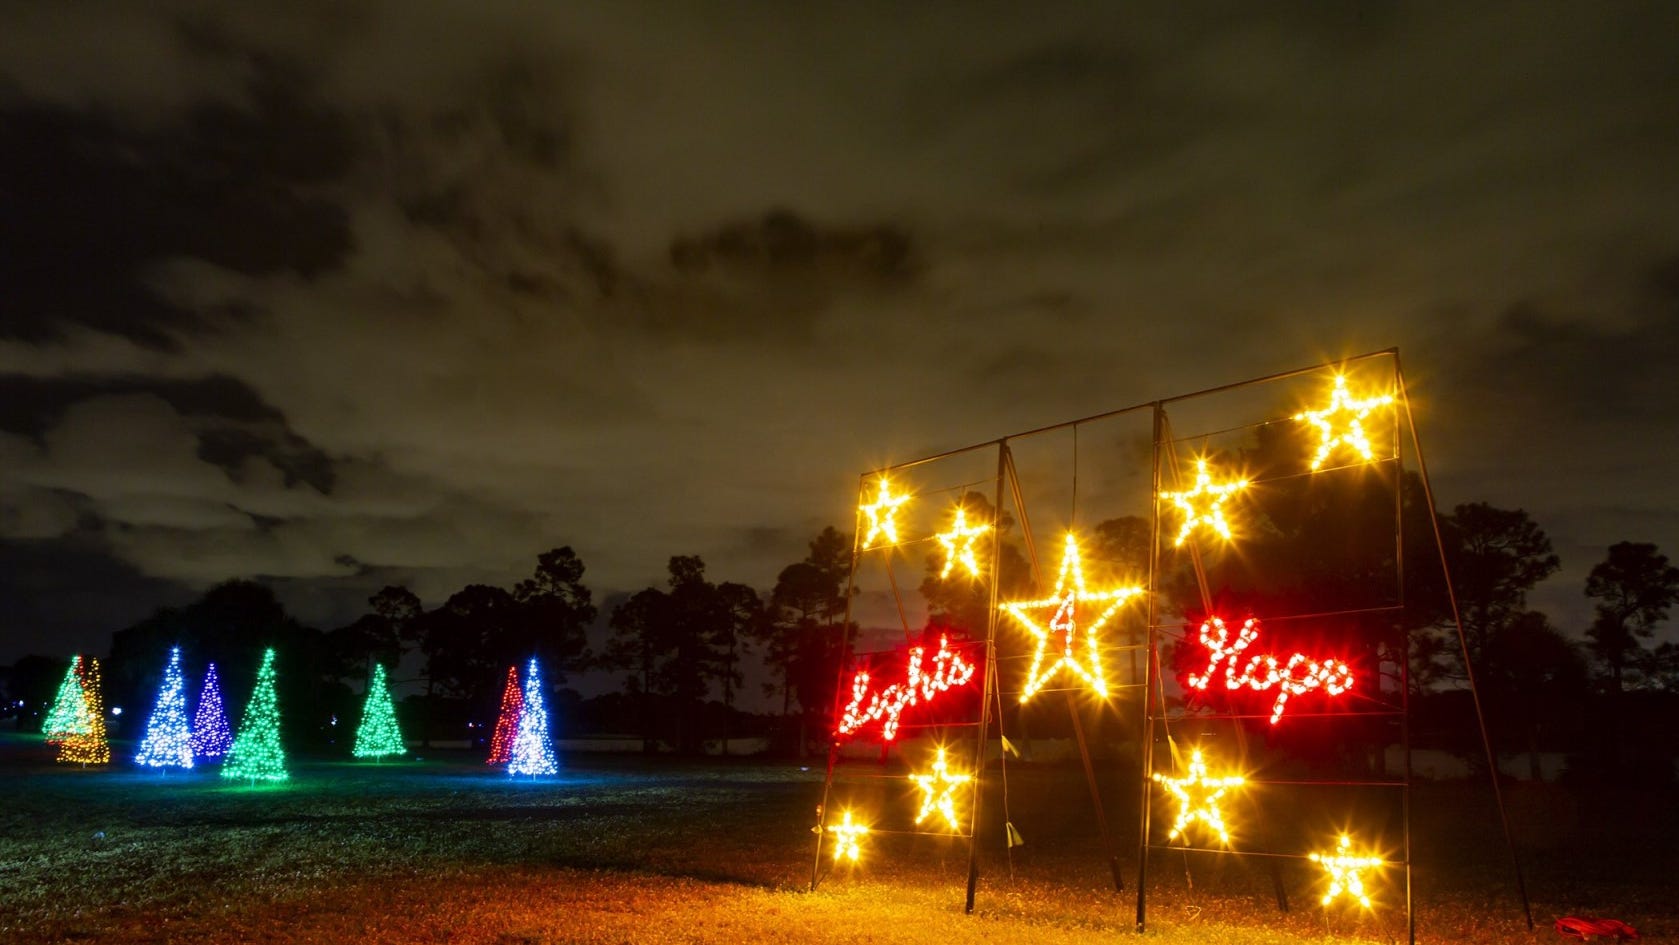 Lights4Hope brings holiday cheer to Okeeheelee Park